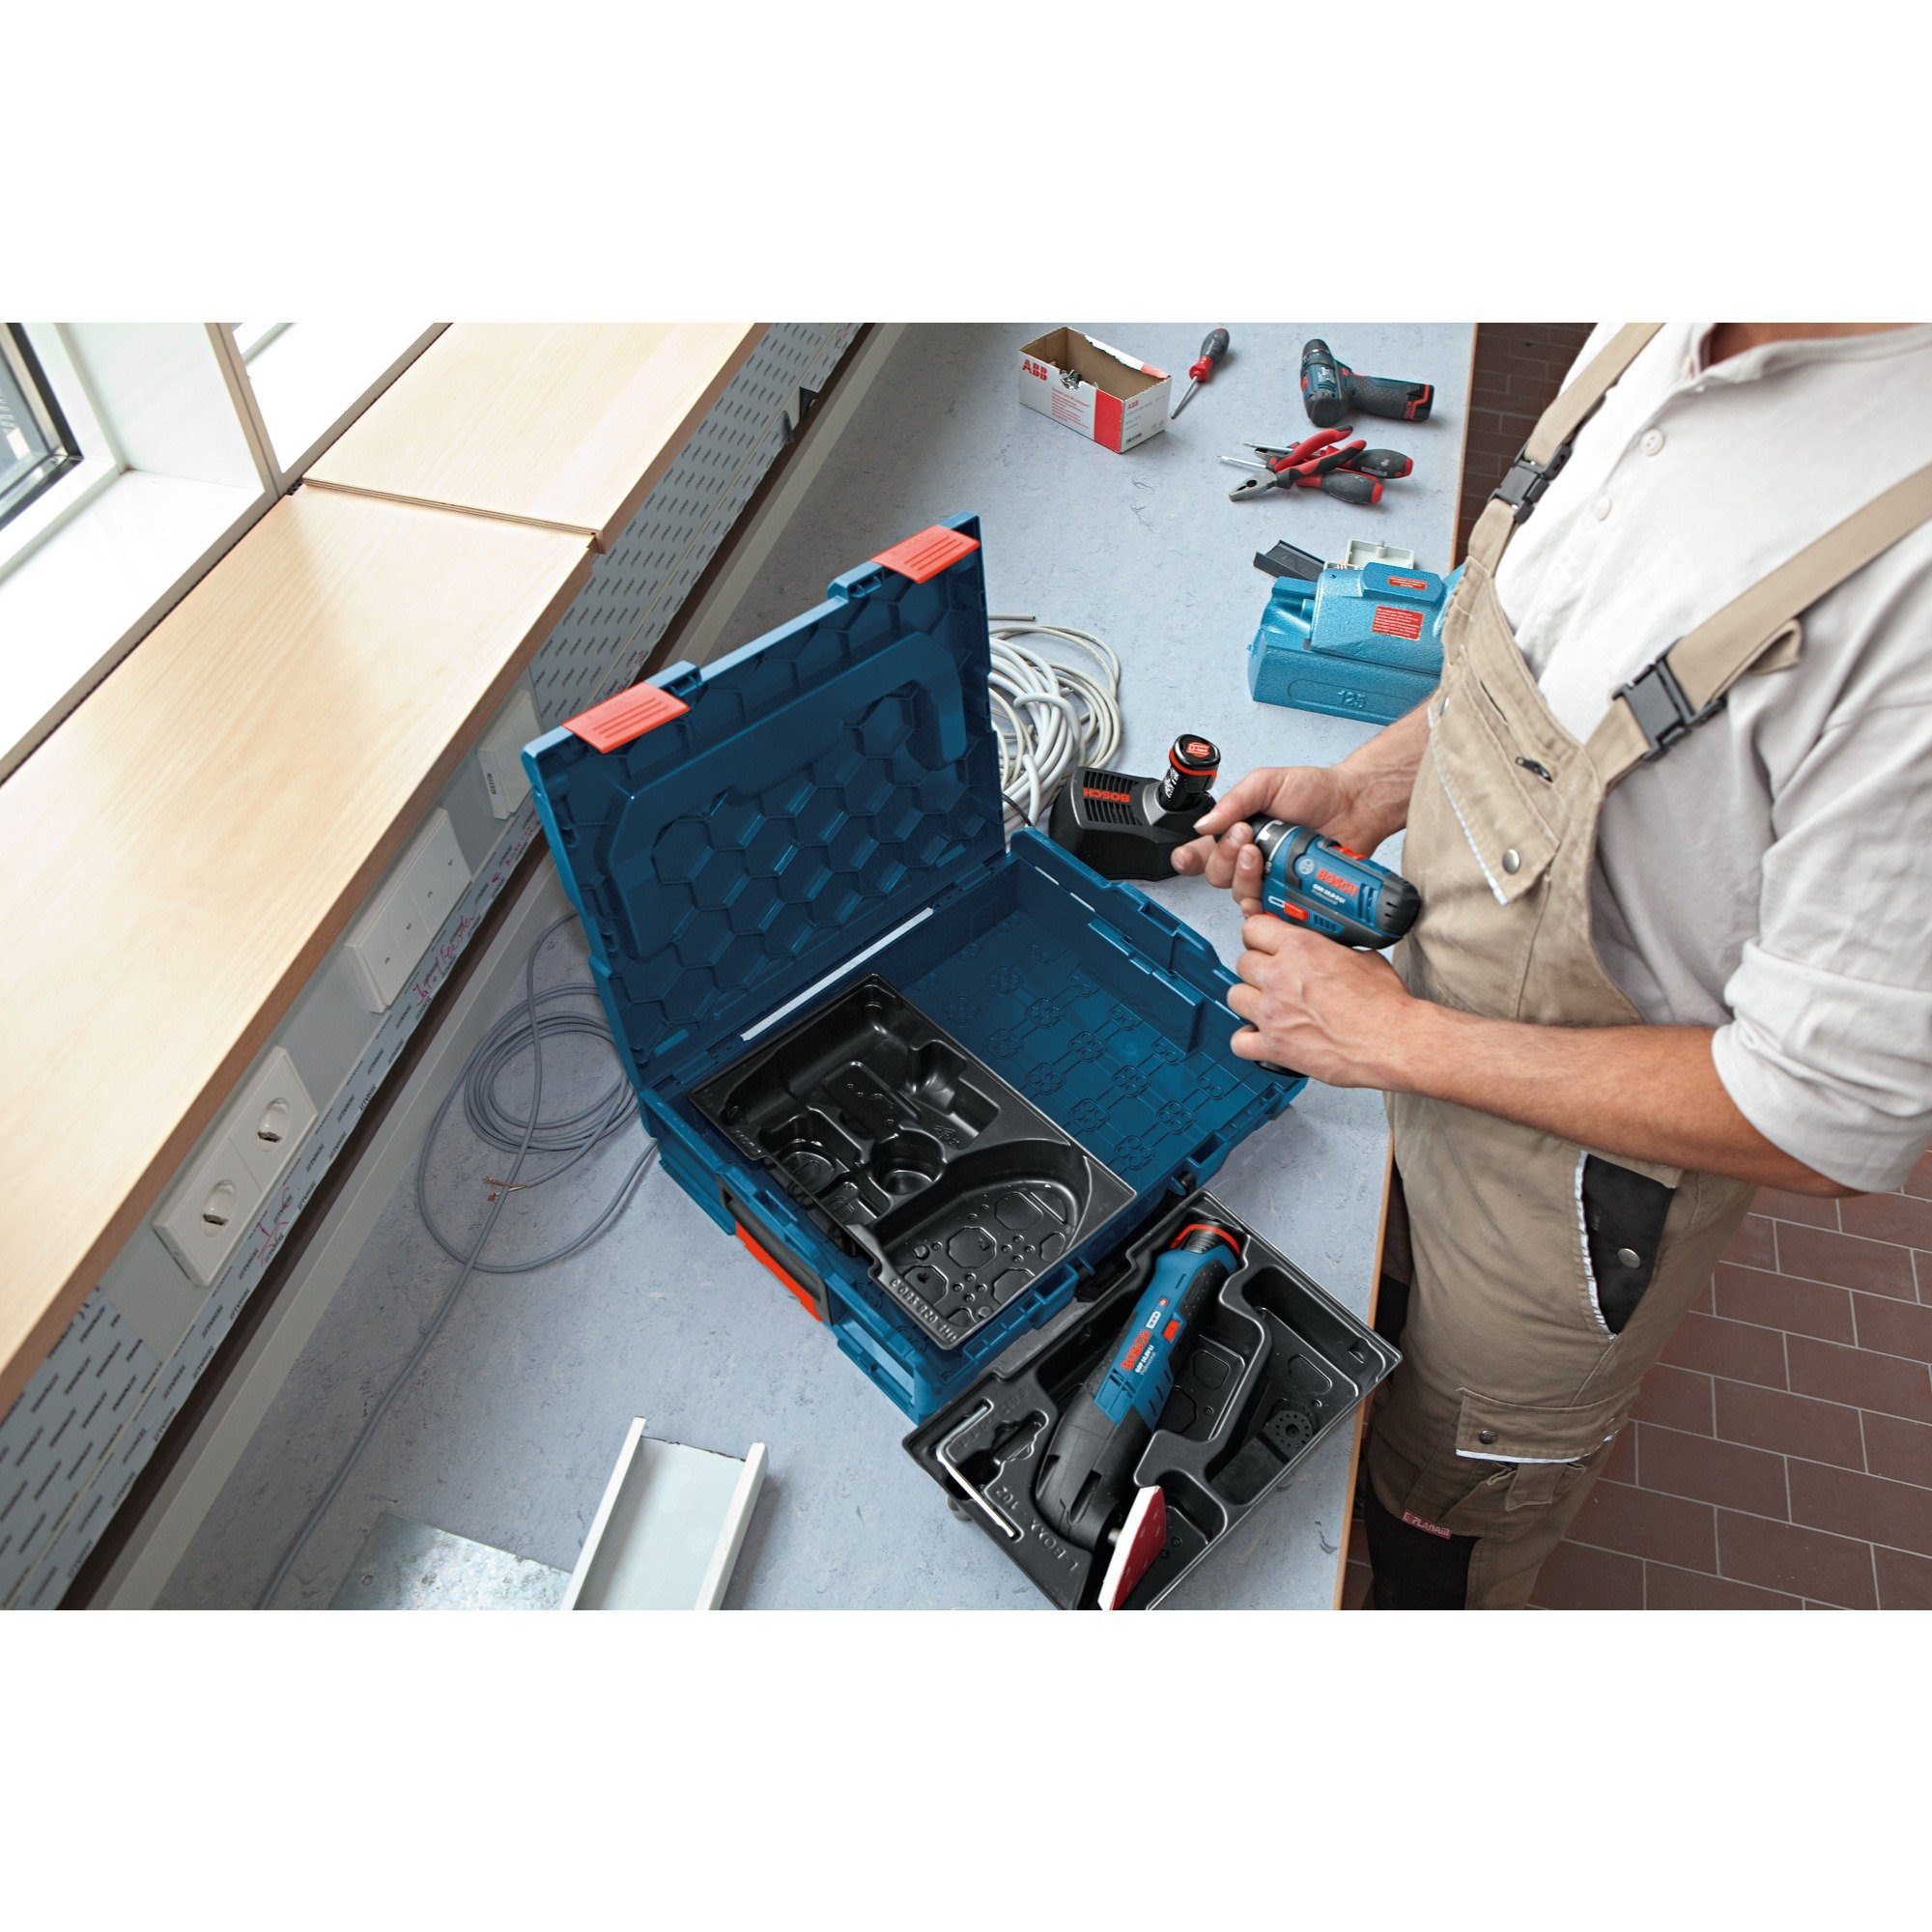 Einlage BOSCH 55 GCE für Bosch L-Boxx GKS Professional Werkzeugbox